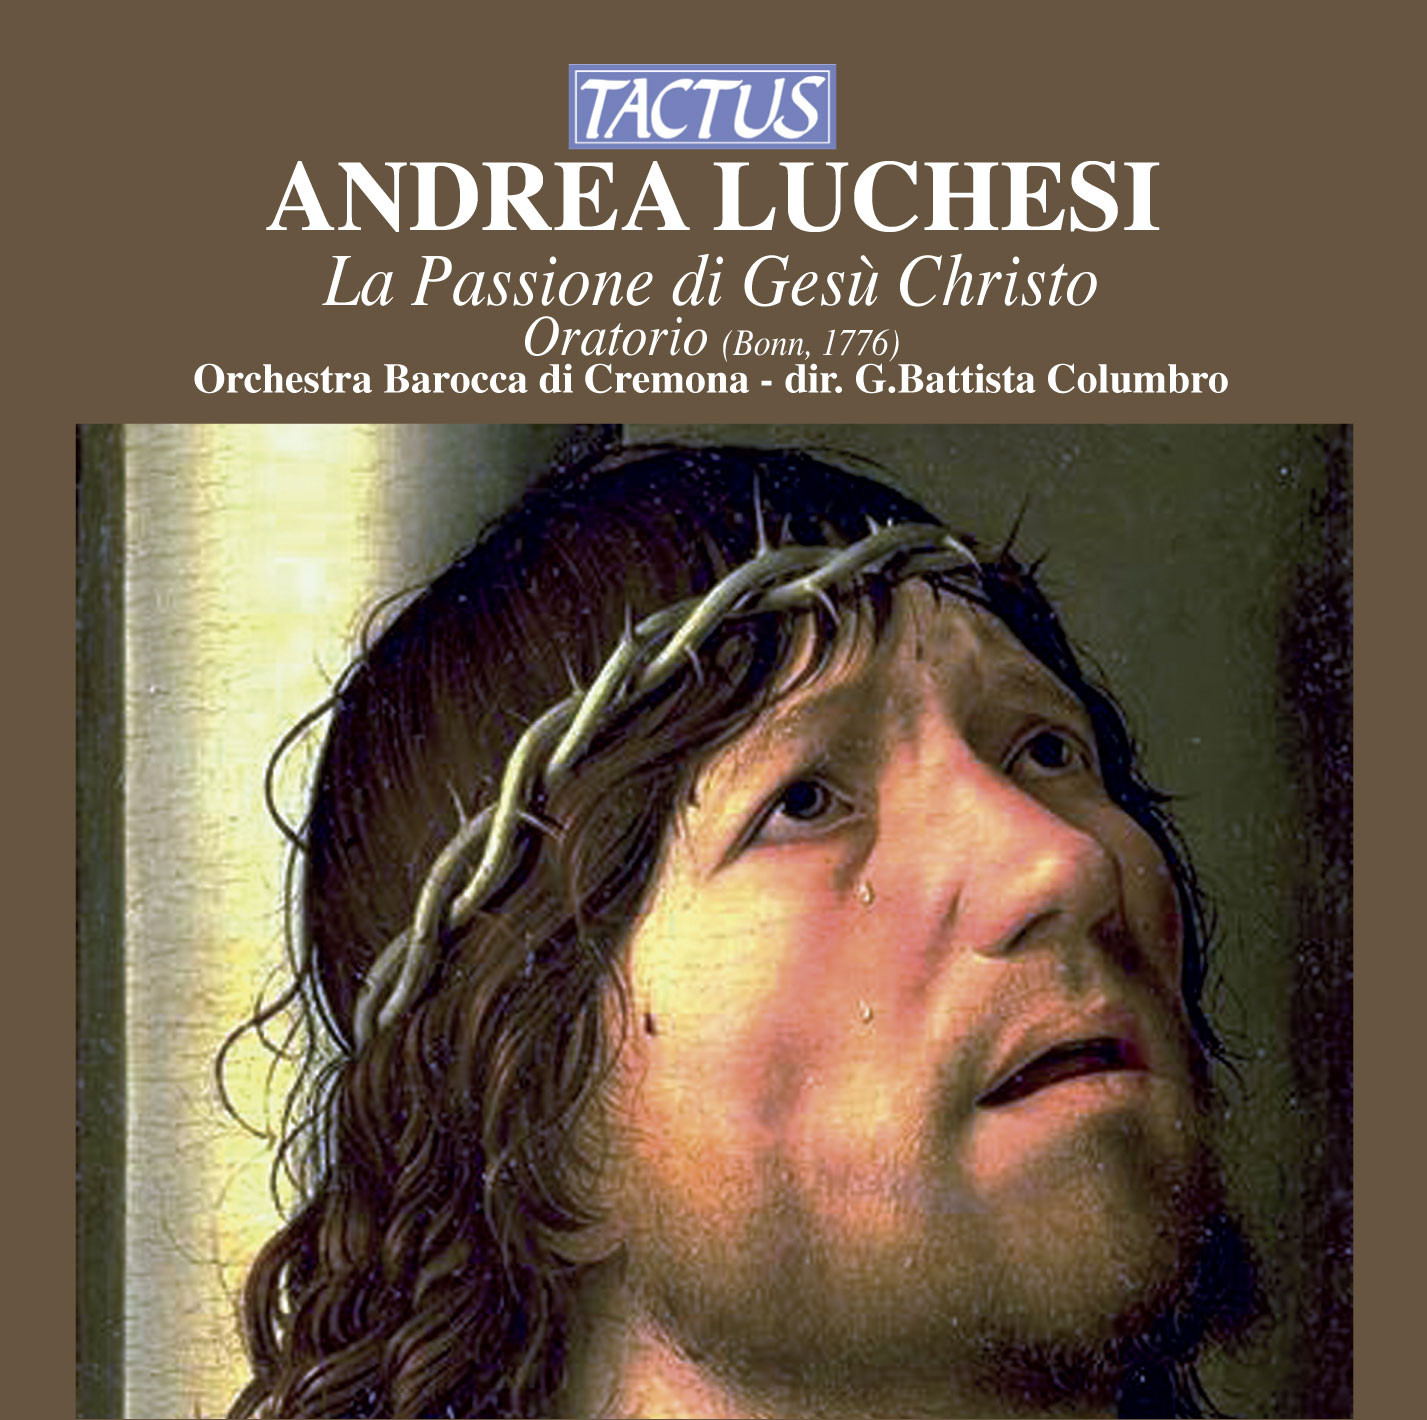 Andrea Luchesi - La passione di Gesù Cristo